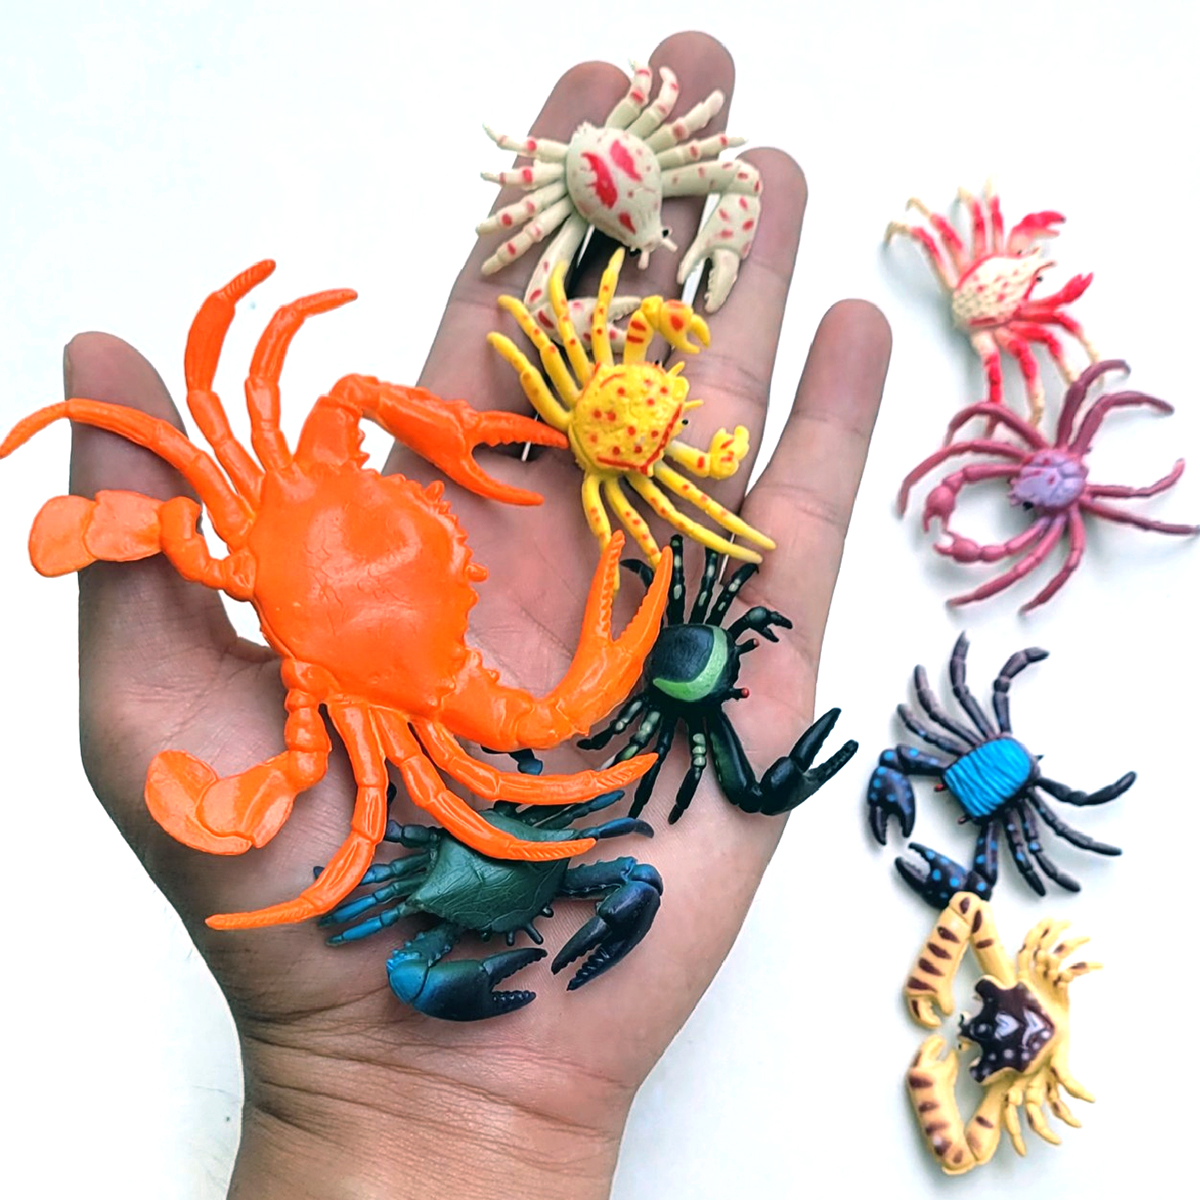 Đồ Chơi Mô Hình 9 Con Cua Bằng Nhựa Dẻo Natural Crab Vui Nhộn Cho Trẻ Em mô hình sinh vật biển